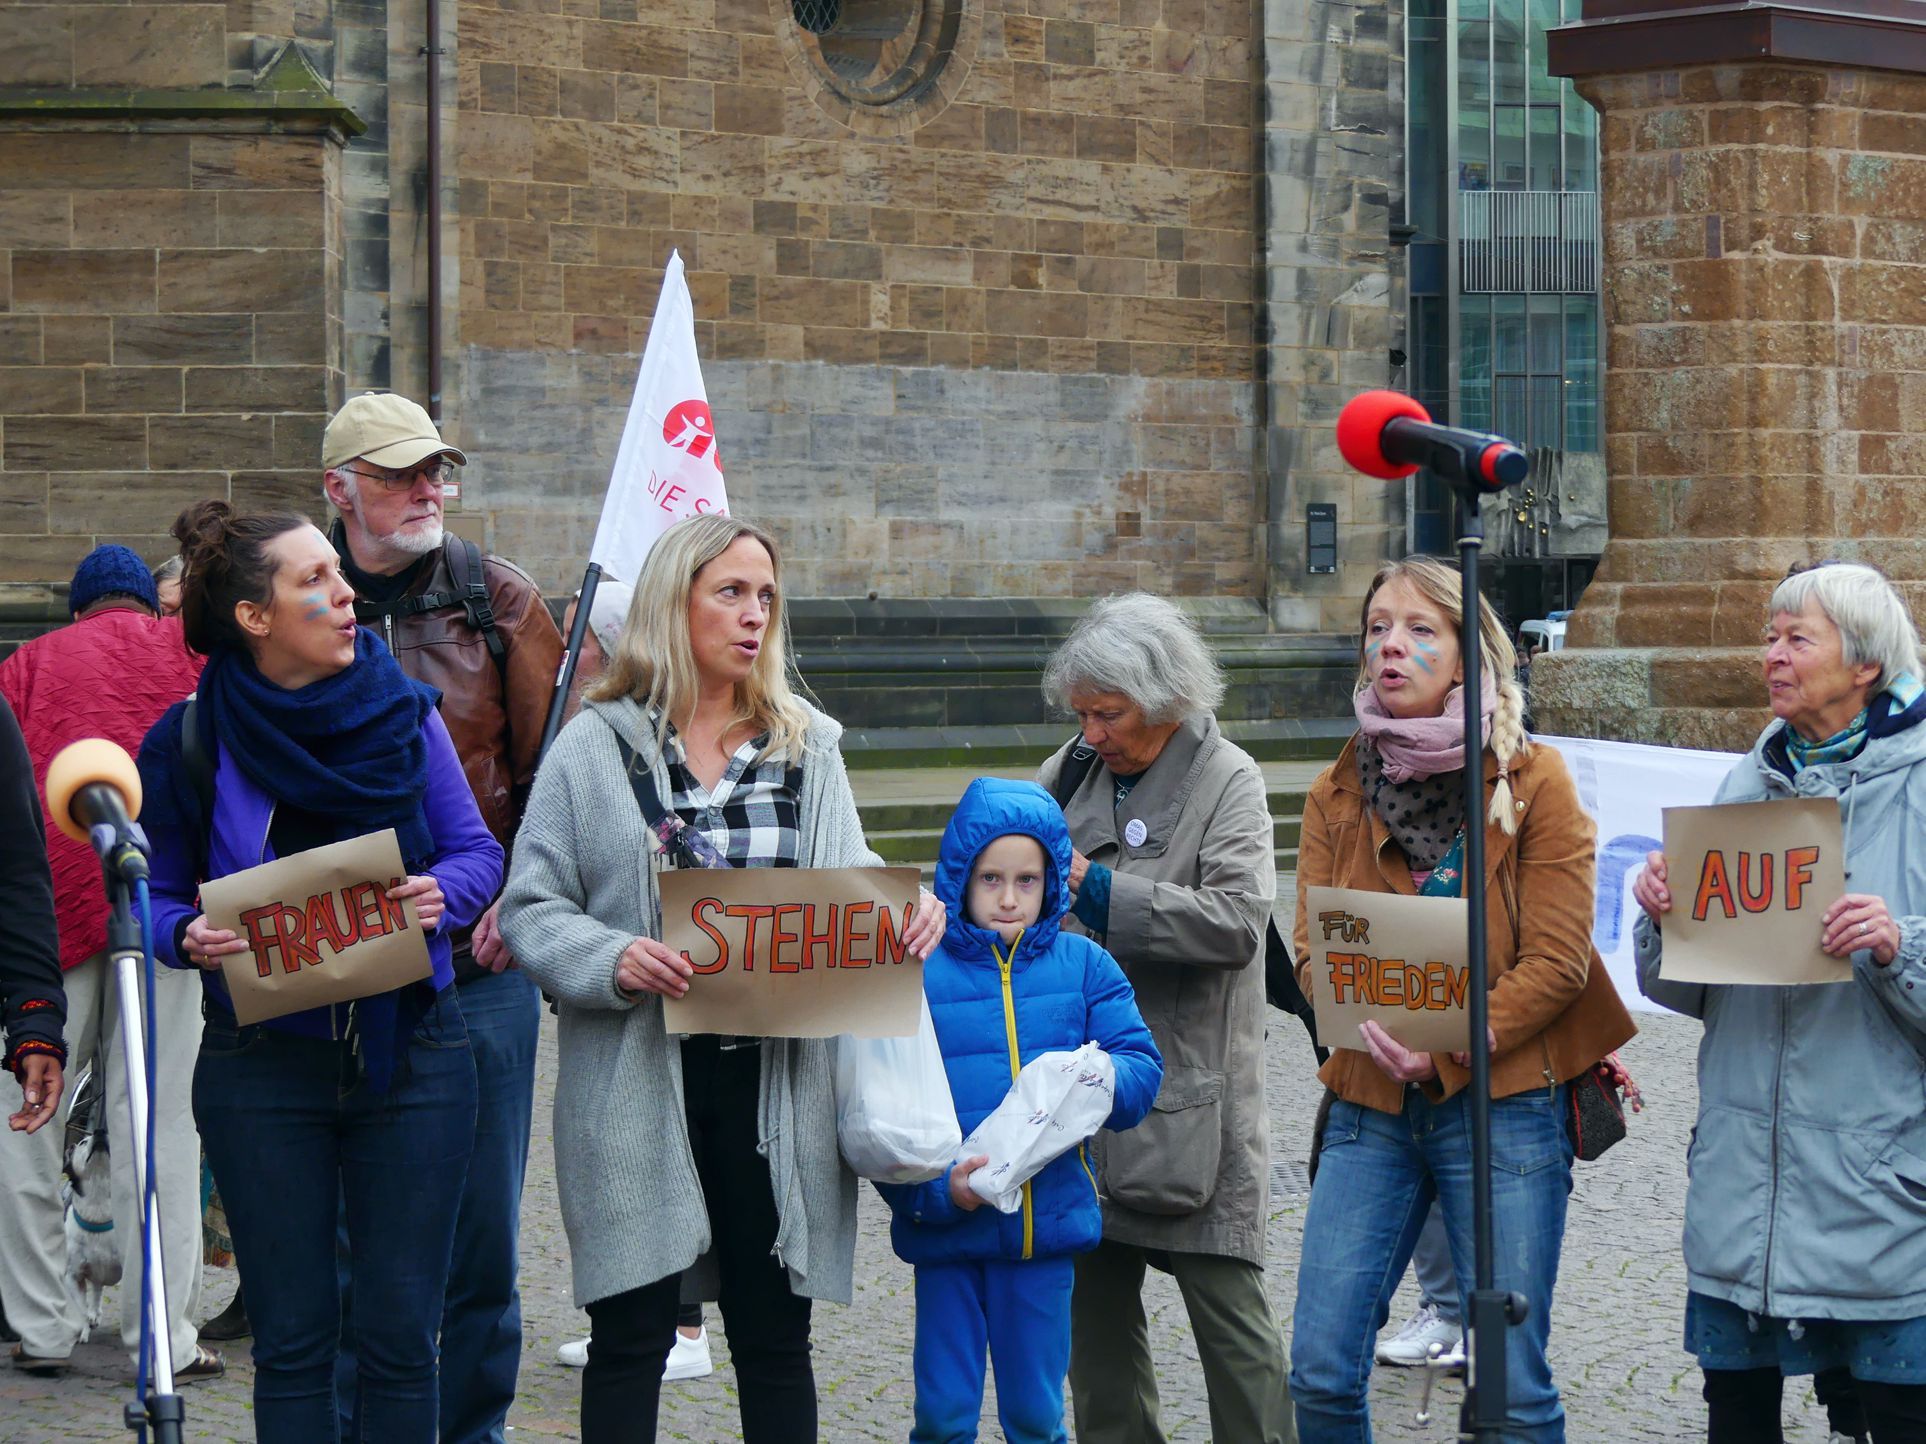 Frauen stehen für Frieden auf 29.09.2022 Domshof Bremen